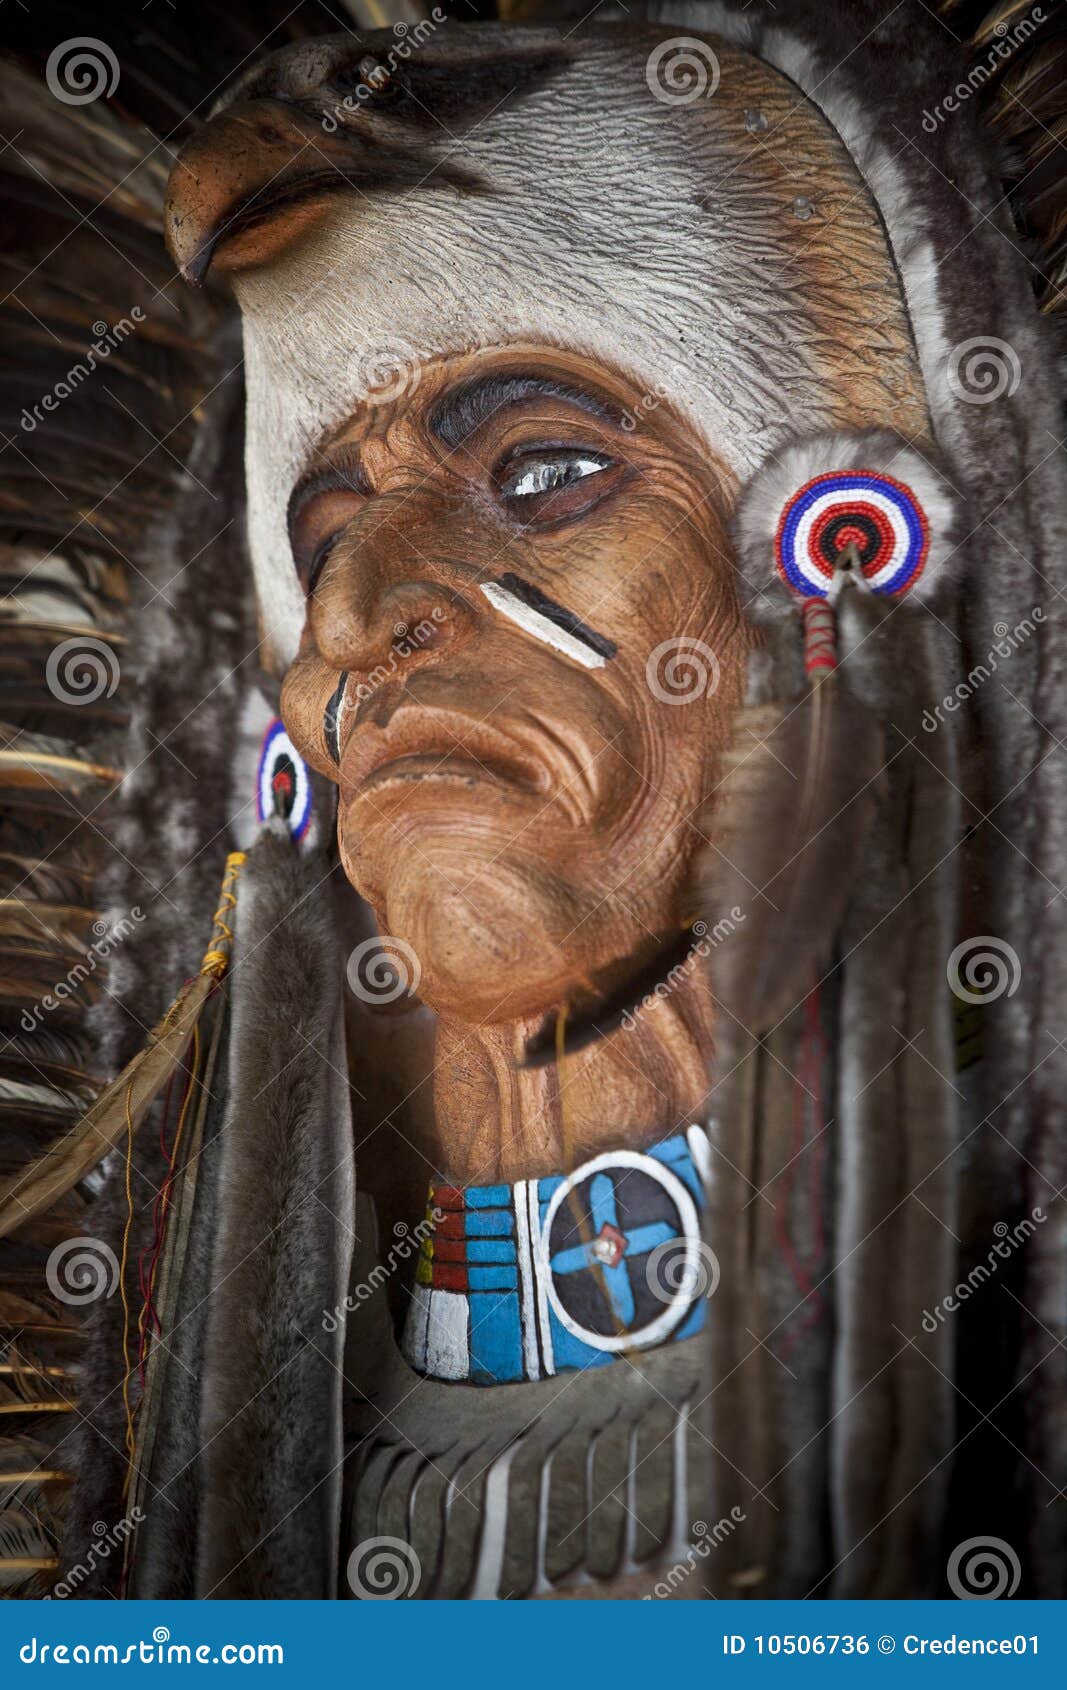 native american mask